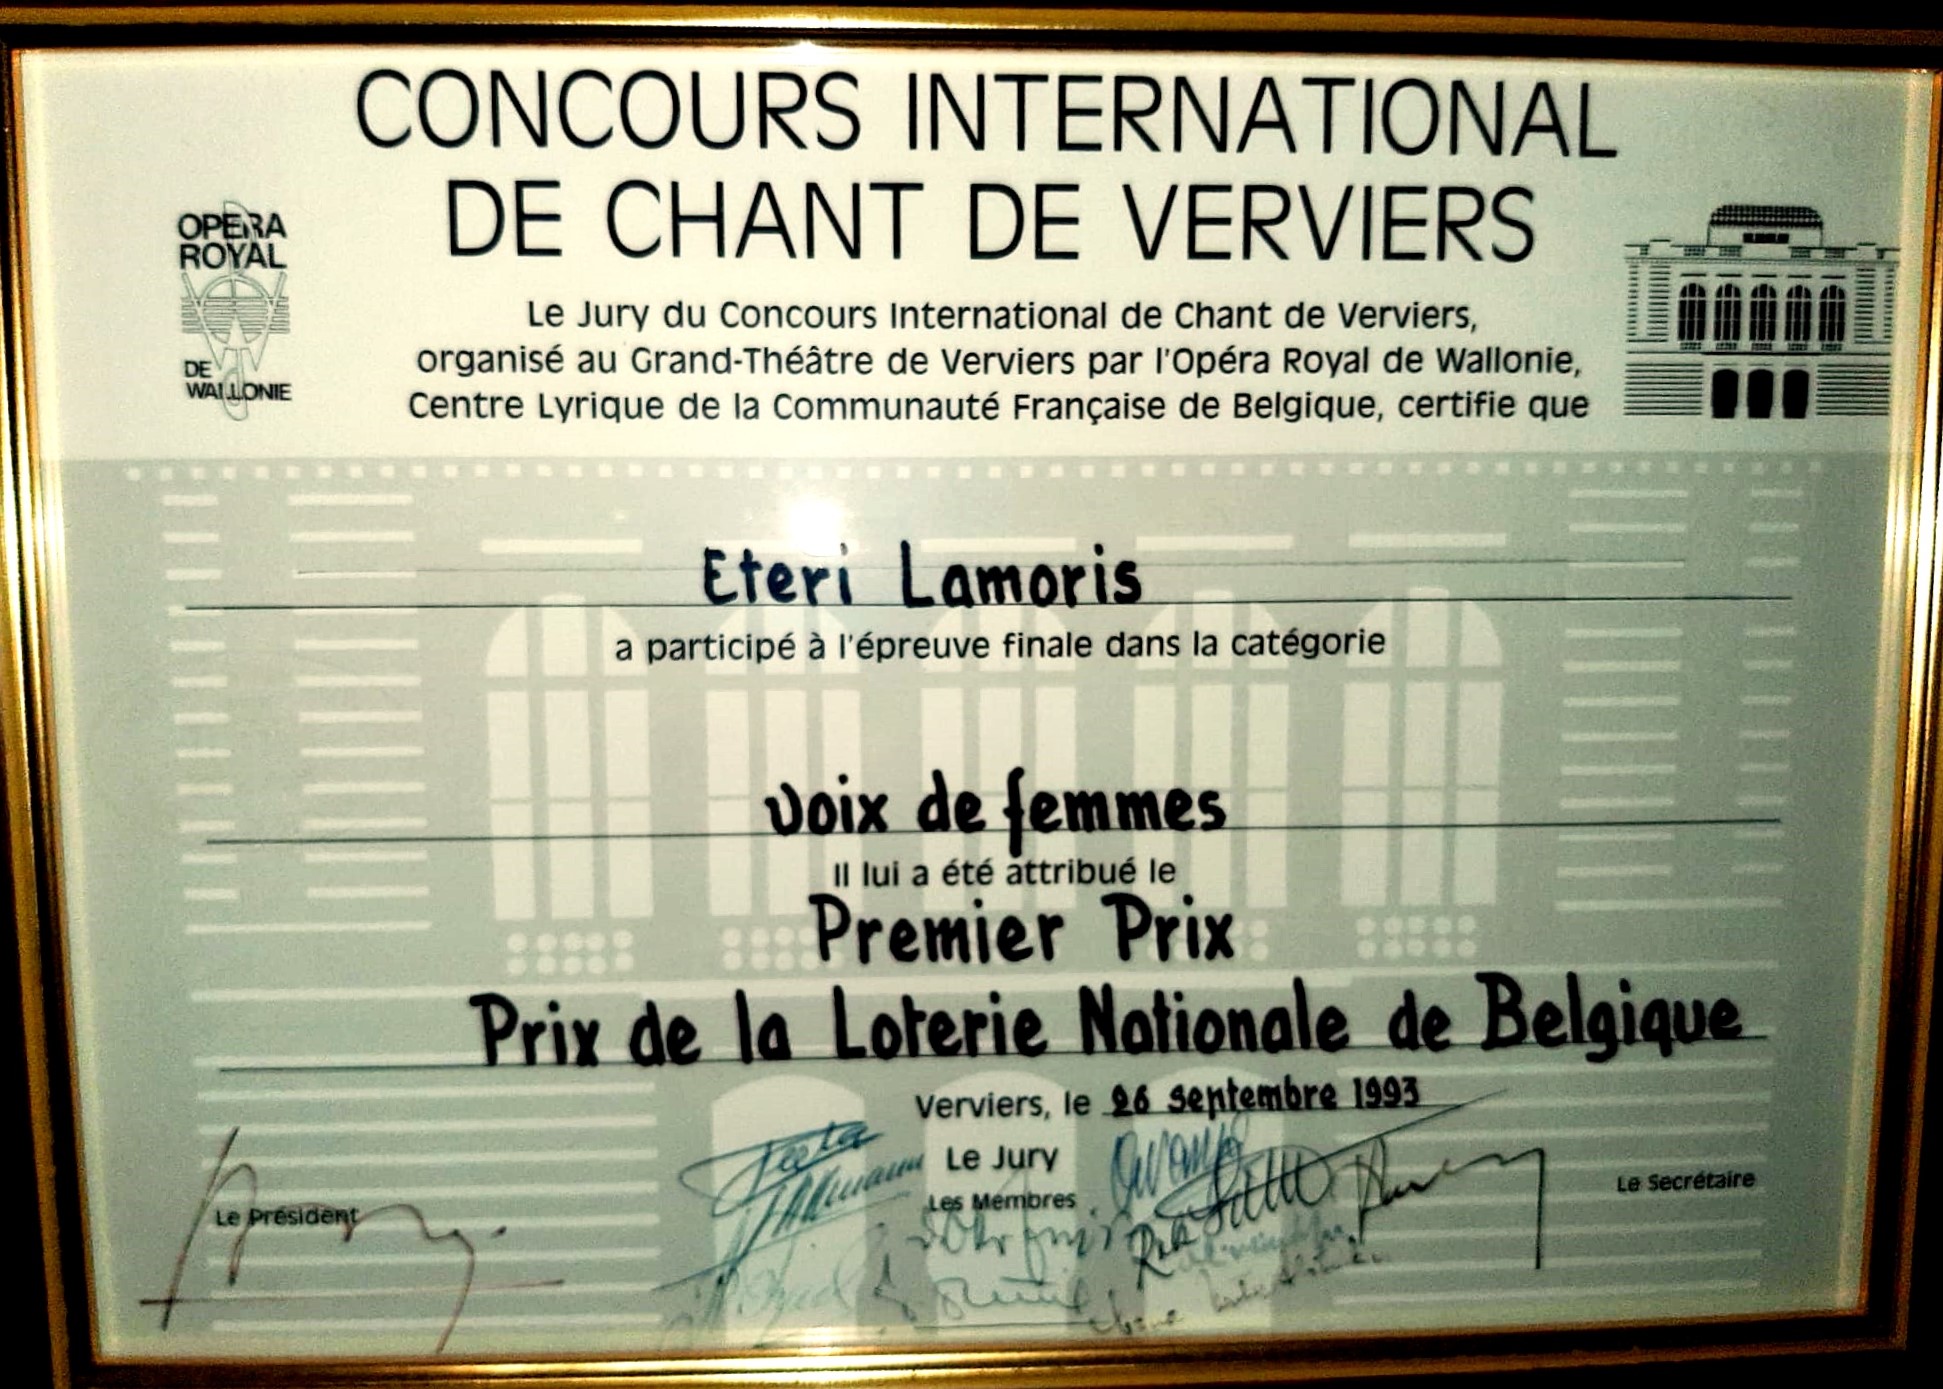 Concours International De Chant De Verviers - Eteri Lamoris won First Price de la Loterie Nationale de Belgique (1993)